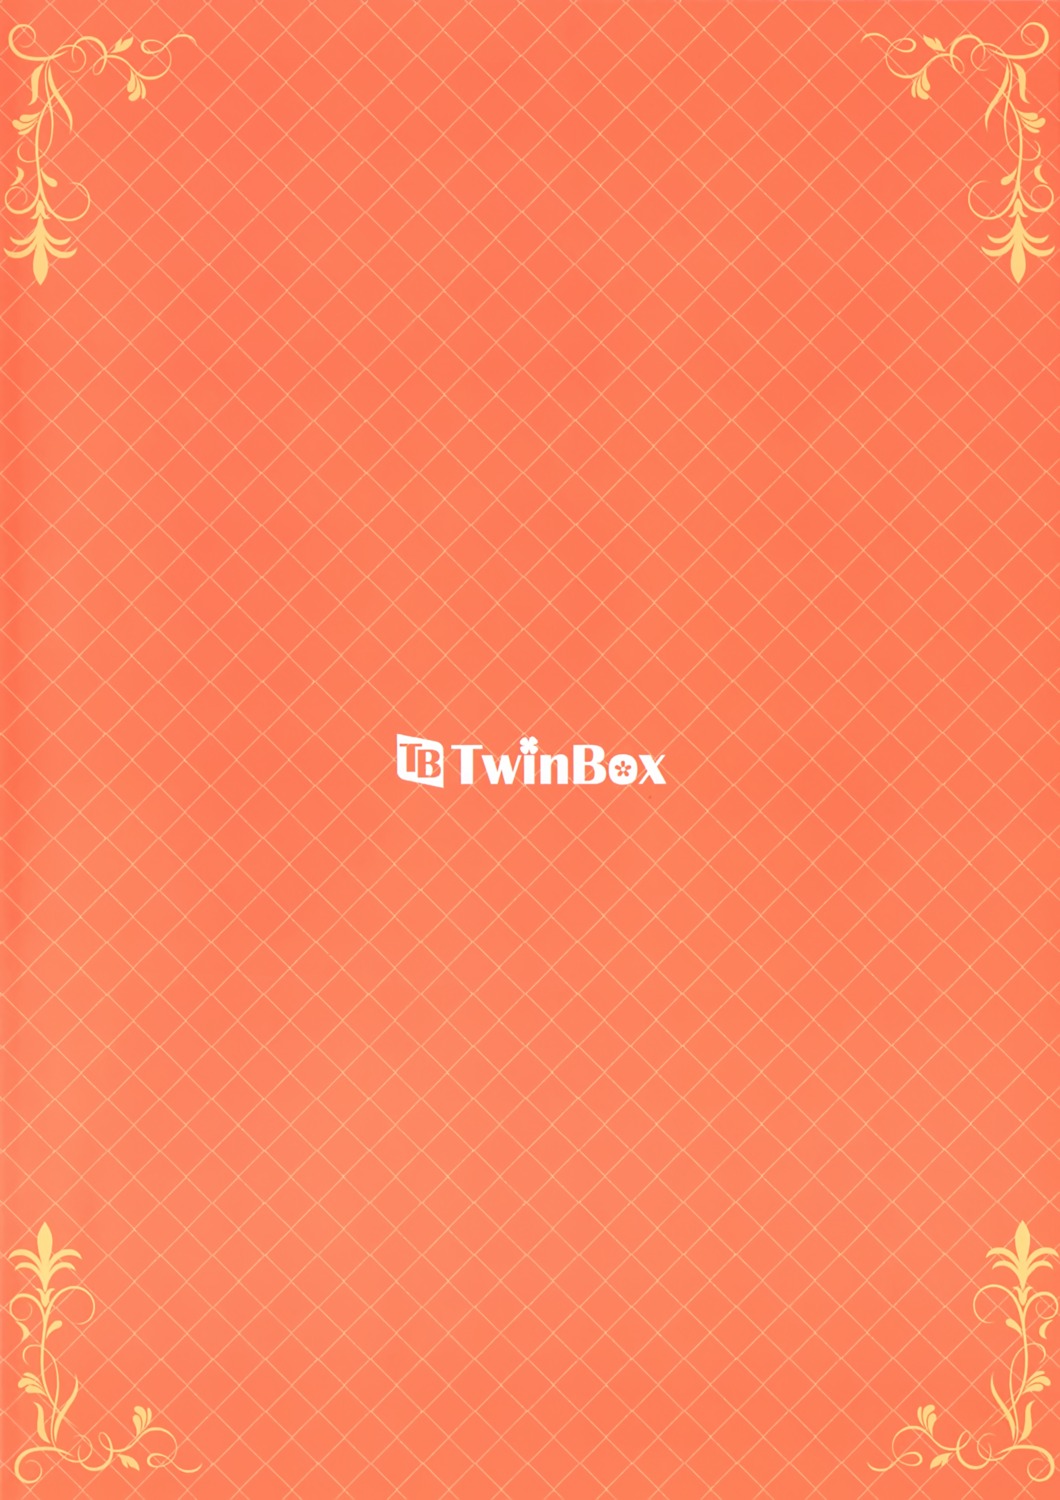 tagme twinbox_(circle)